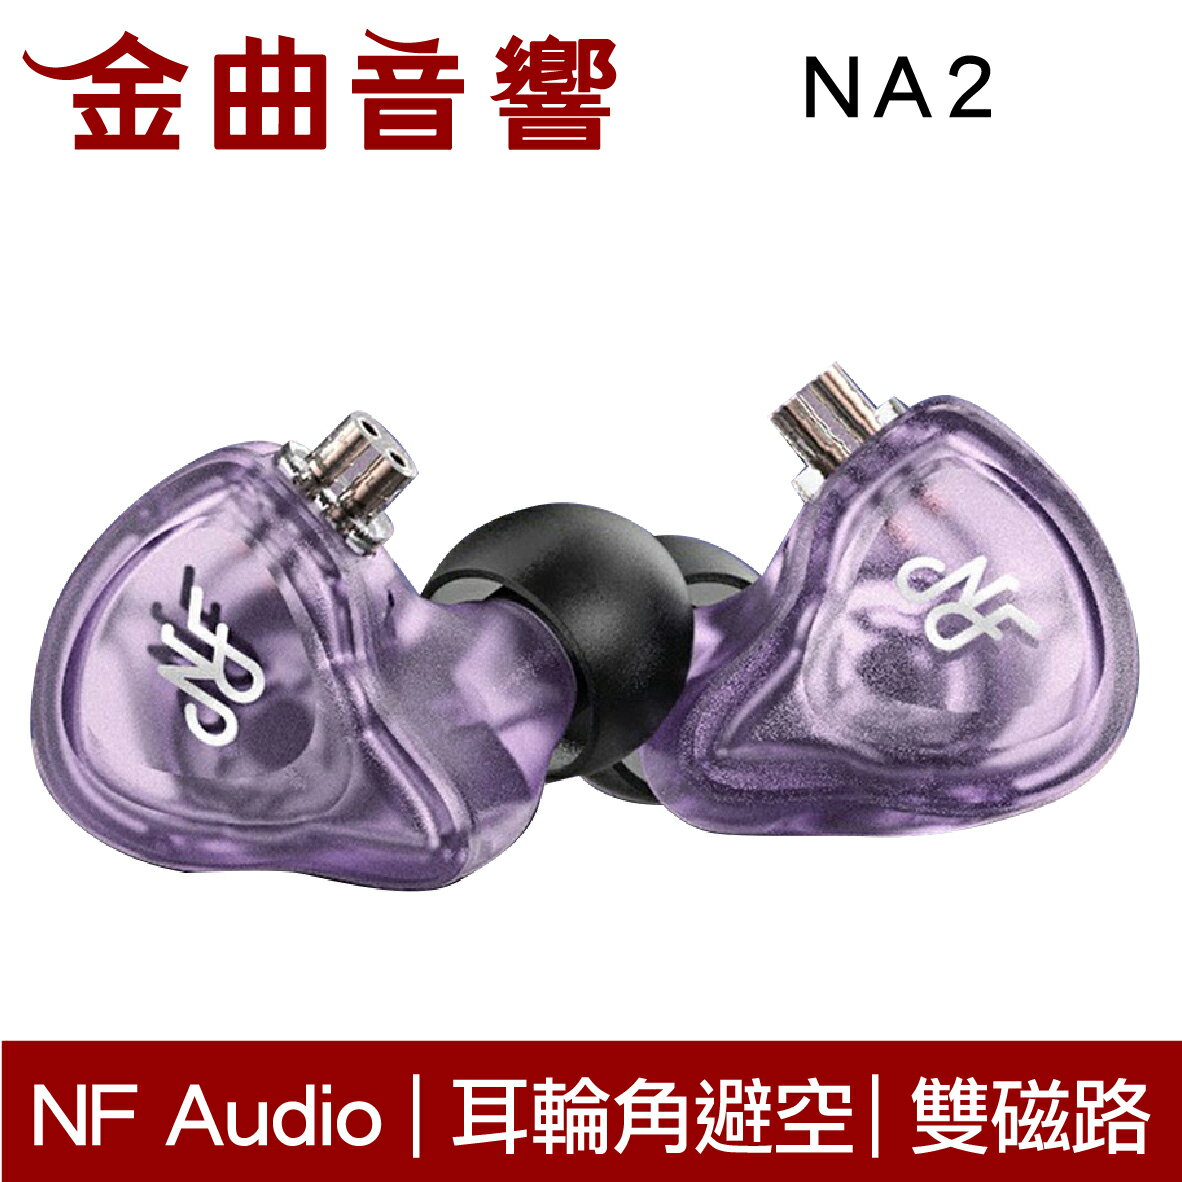 NF Audio 寧梵 NA2 紫色 雙磁路 雙腔體動圈 入耳式耳機 | 金曲音響